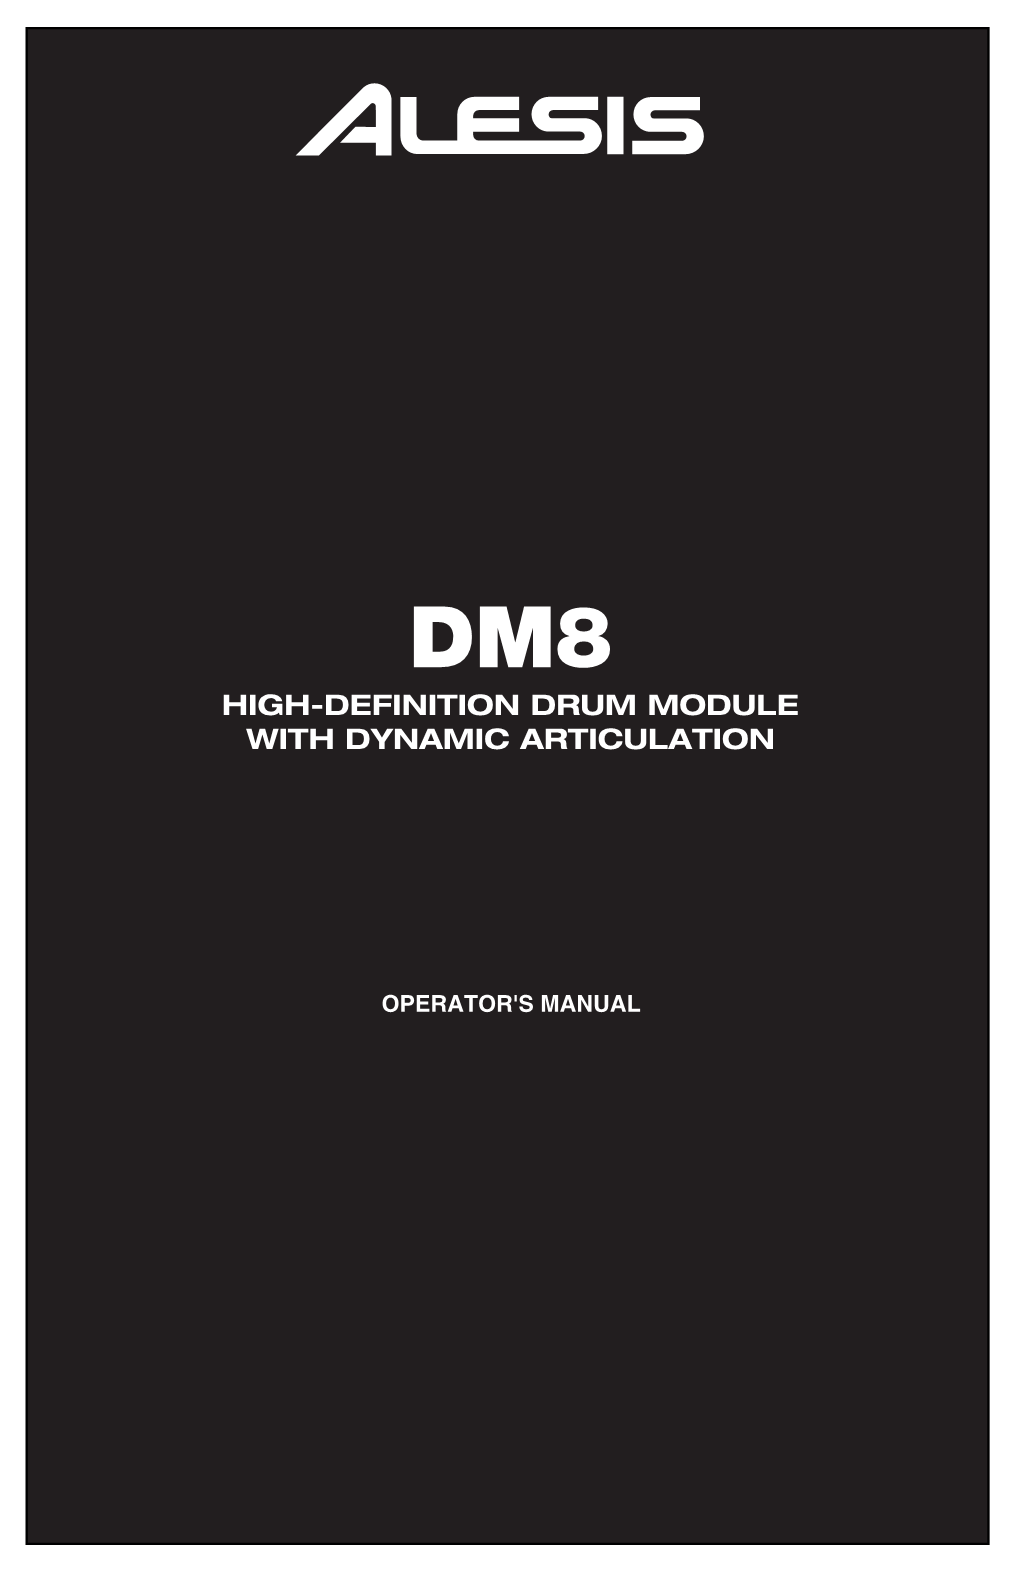 DM8 Module's Features